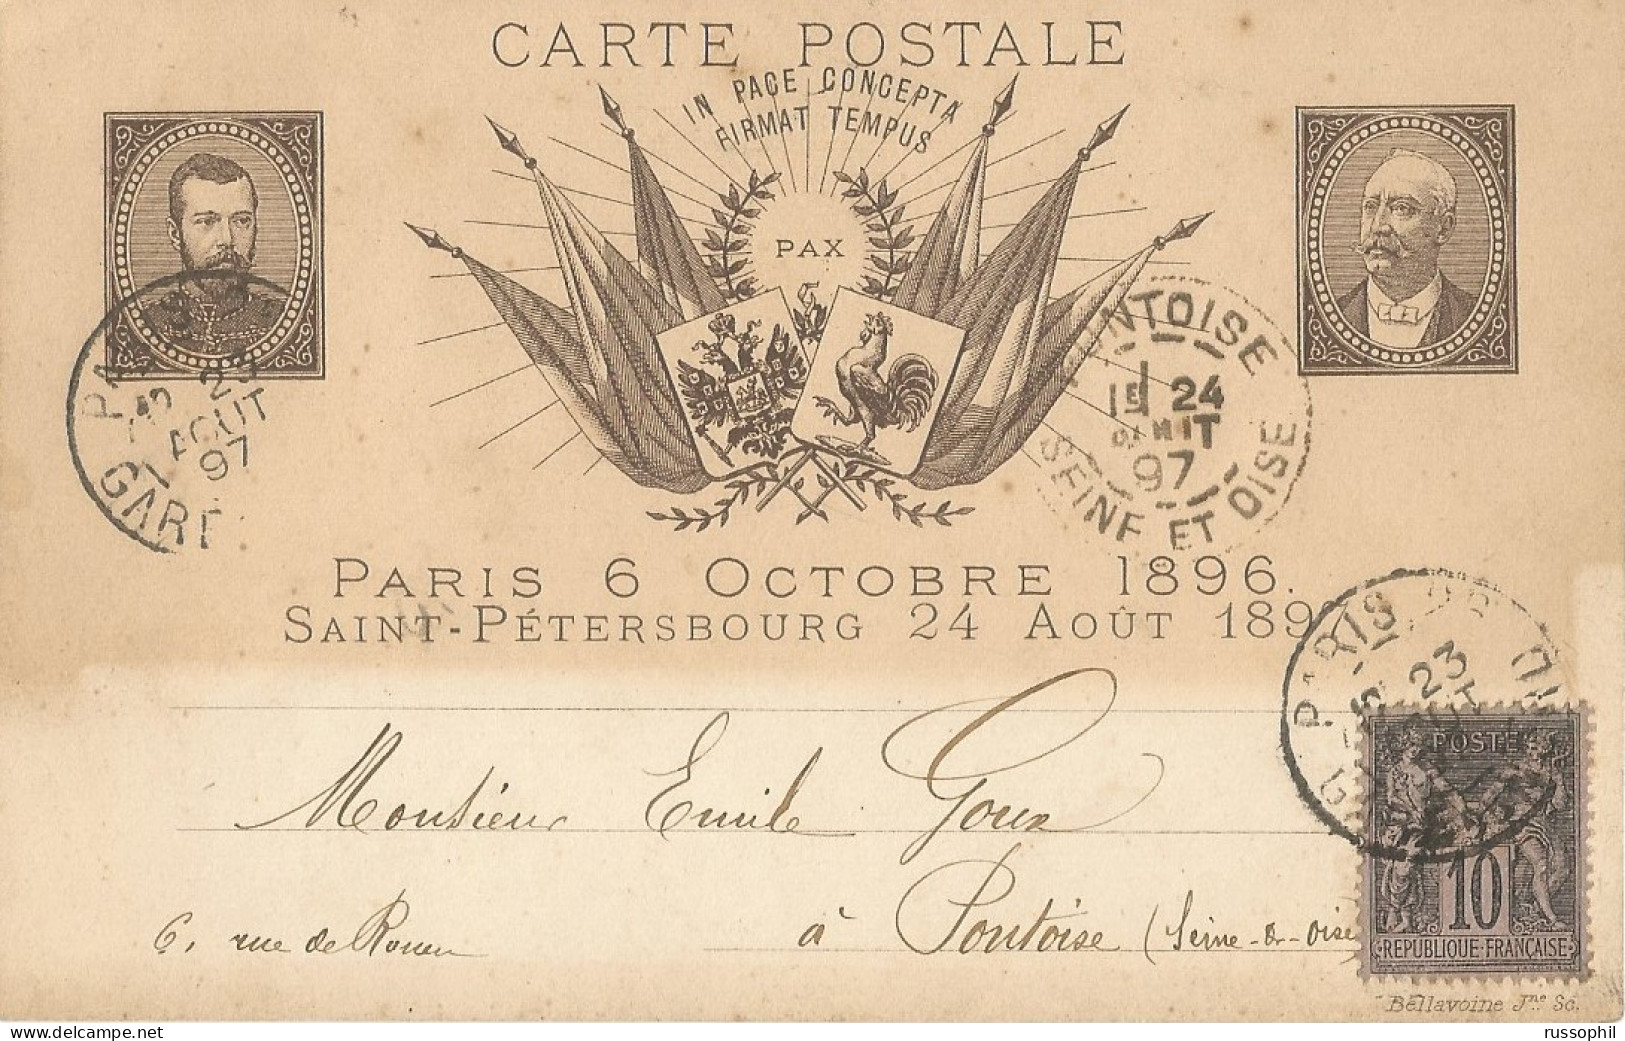 FRANCO RUSSIAN ALLIANCE - PARIS 6 OCTOBRE 1896 SAINT PETERSBOURG 24 AOUT 1897 - ED BELLAVOINE - 1897 - Evènements